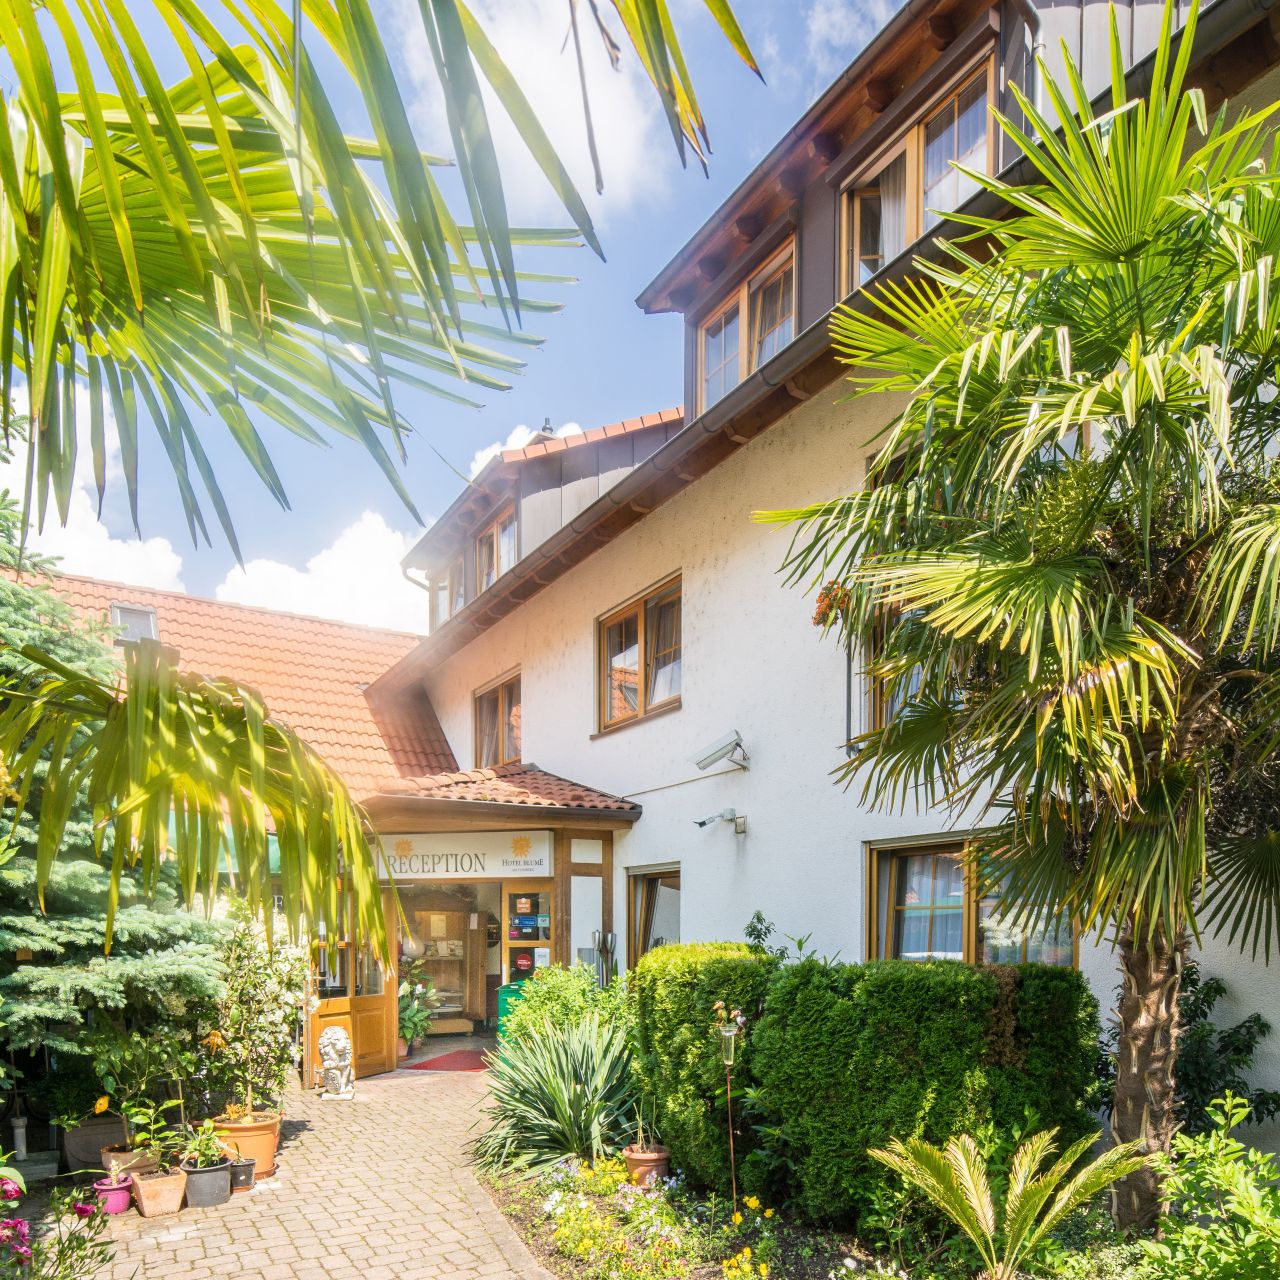 Hotel Blume - Freiburg im Breisgau - Great prices at HOTEL INFO